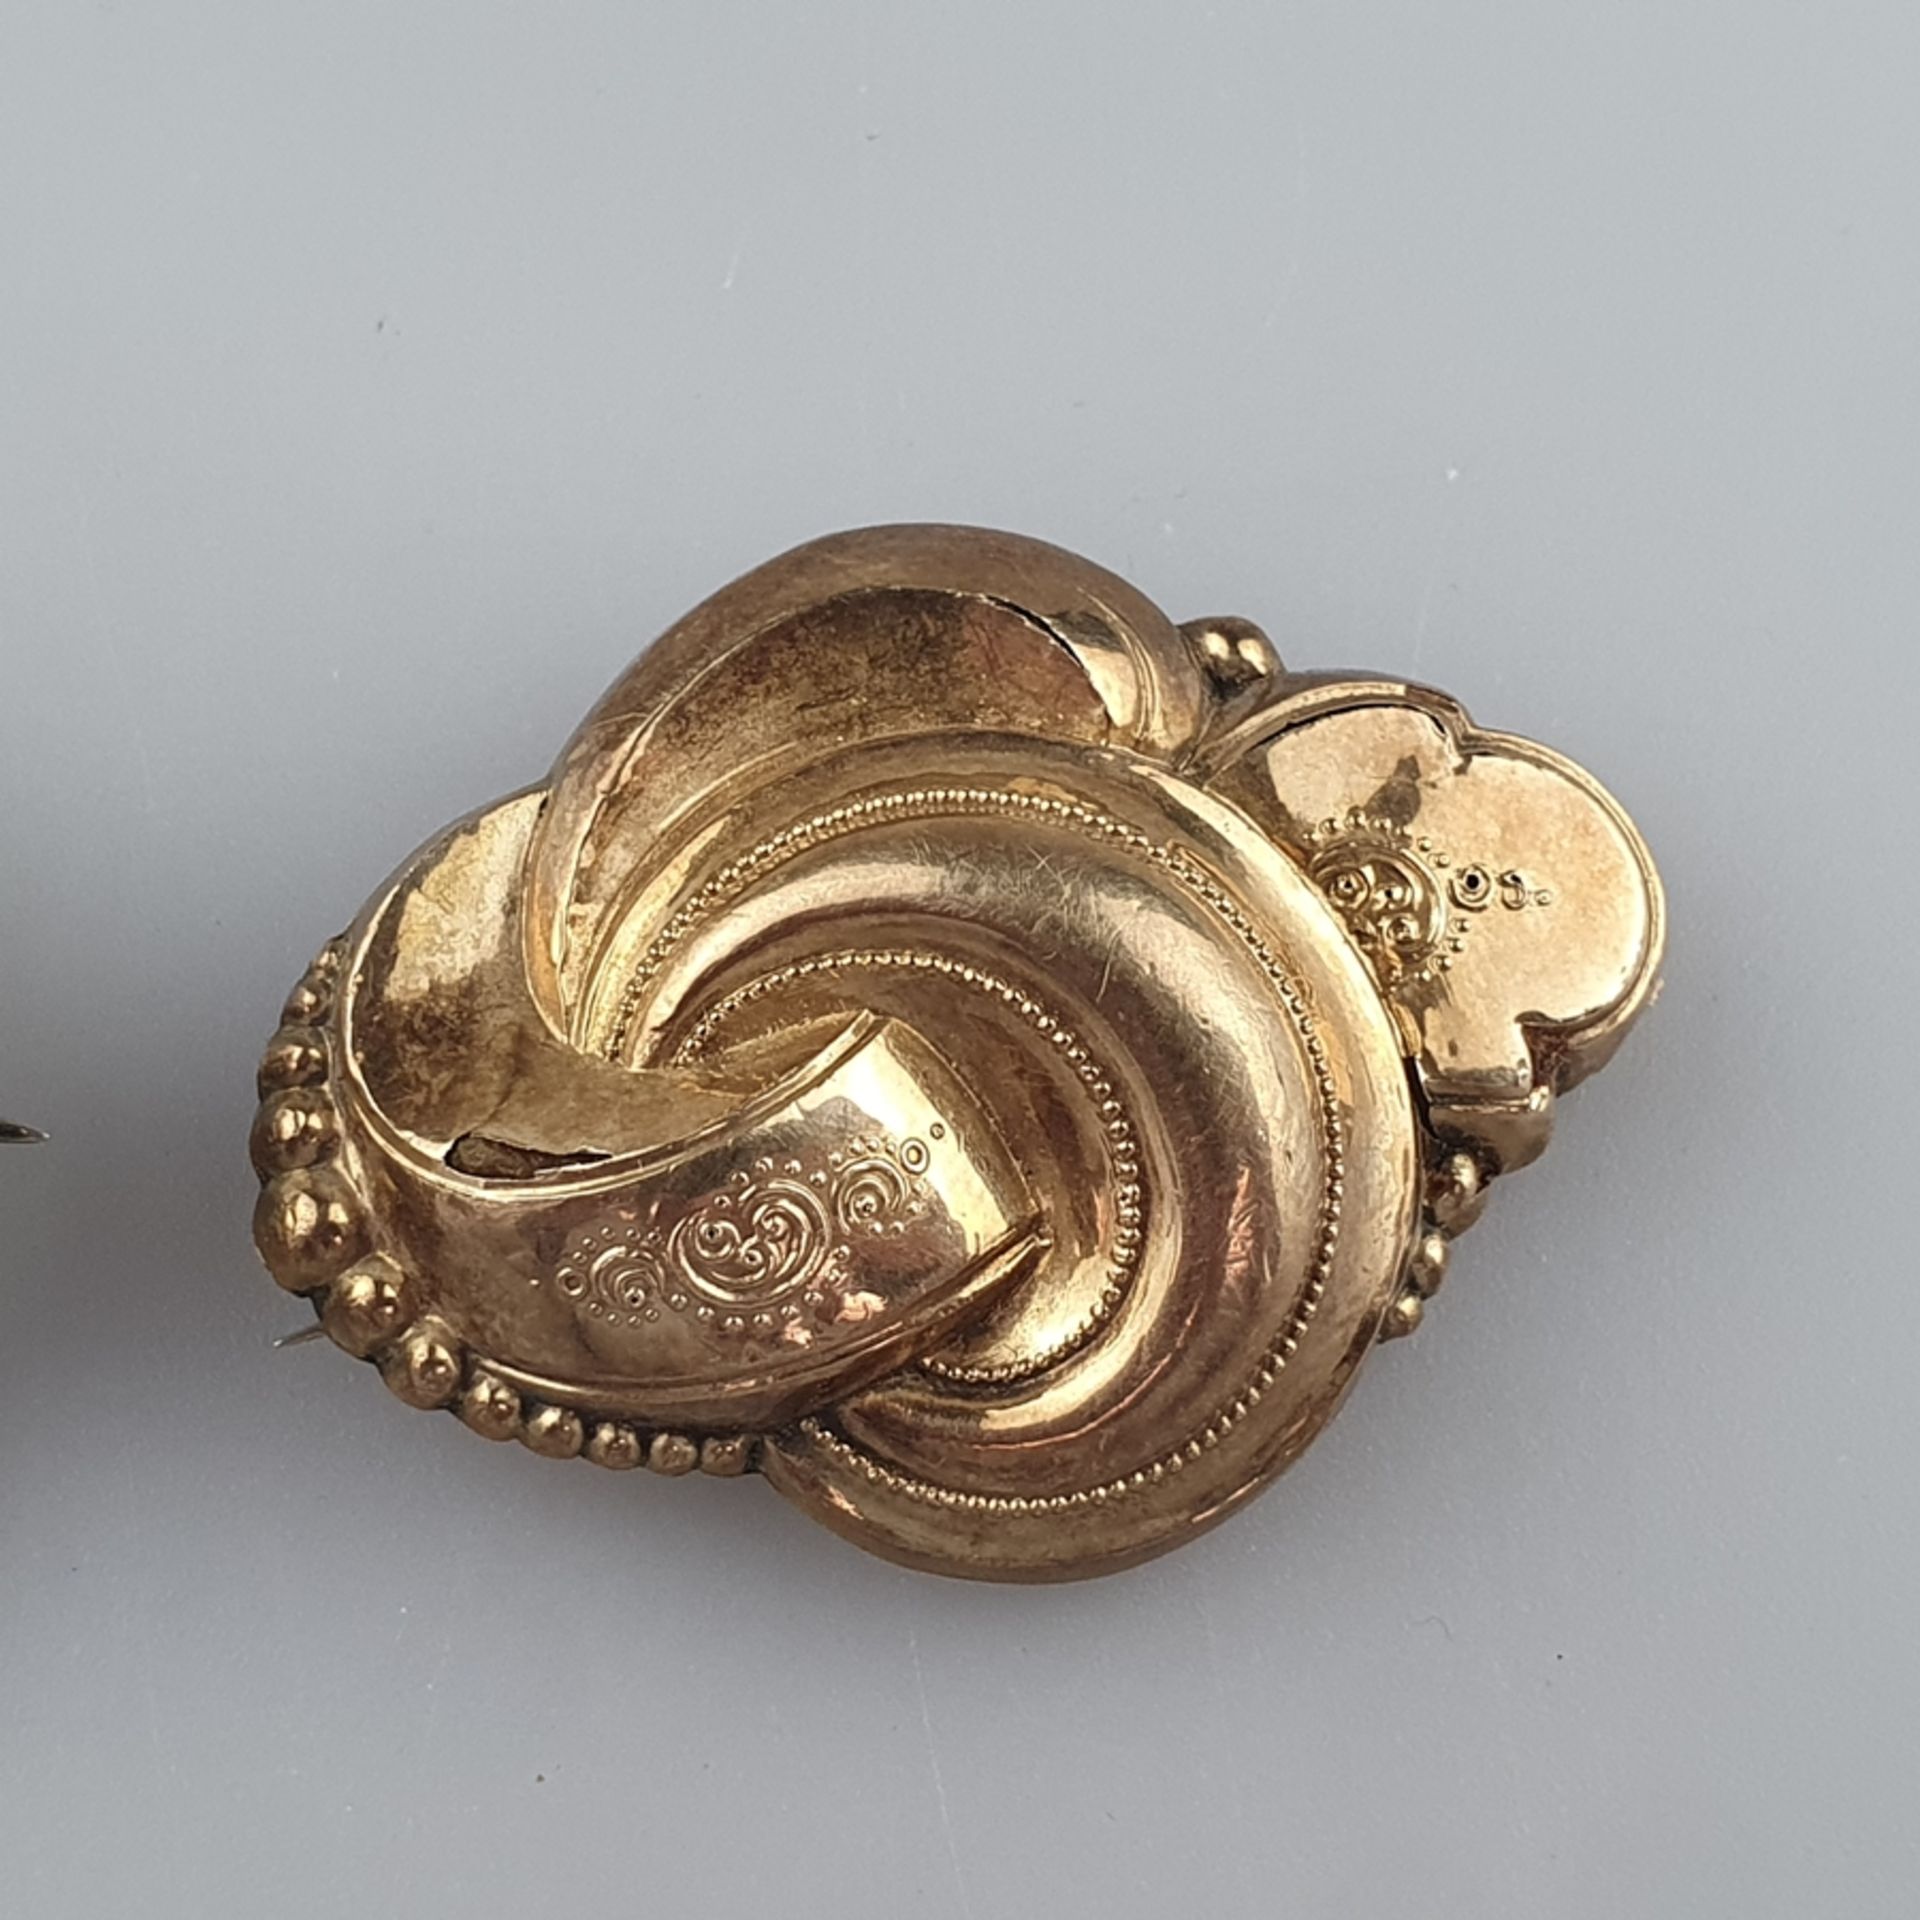 Zwei antike Broschen -19.Jh.- 1 Brosche/Anhänger, Schauseite aus Schaumgold aufwändig dekoriert, ca - Image 3 of 4